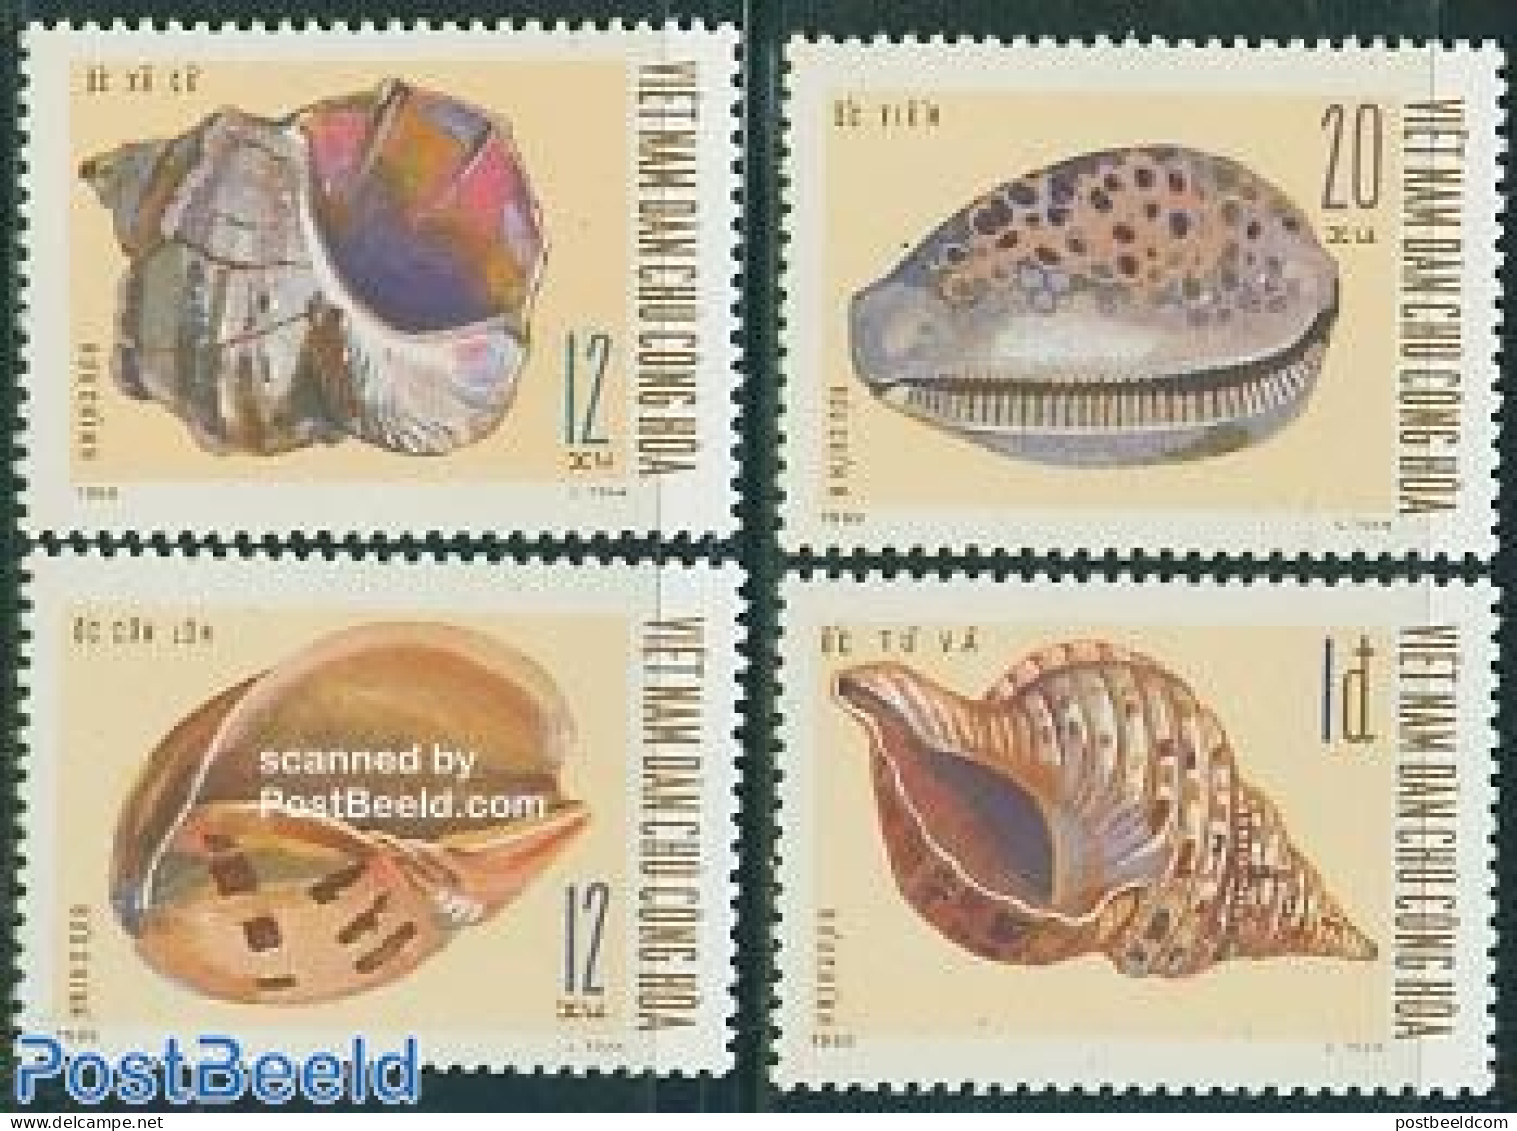 Vietnam 1970 Shells 4v, Mint NH, Nature - Shells & Crustaceans - Marine Life